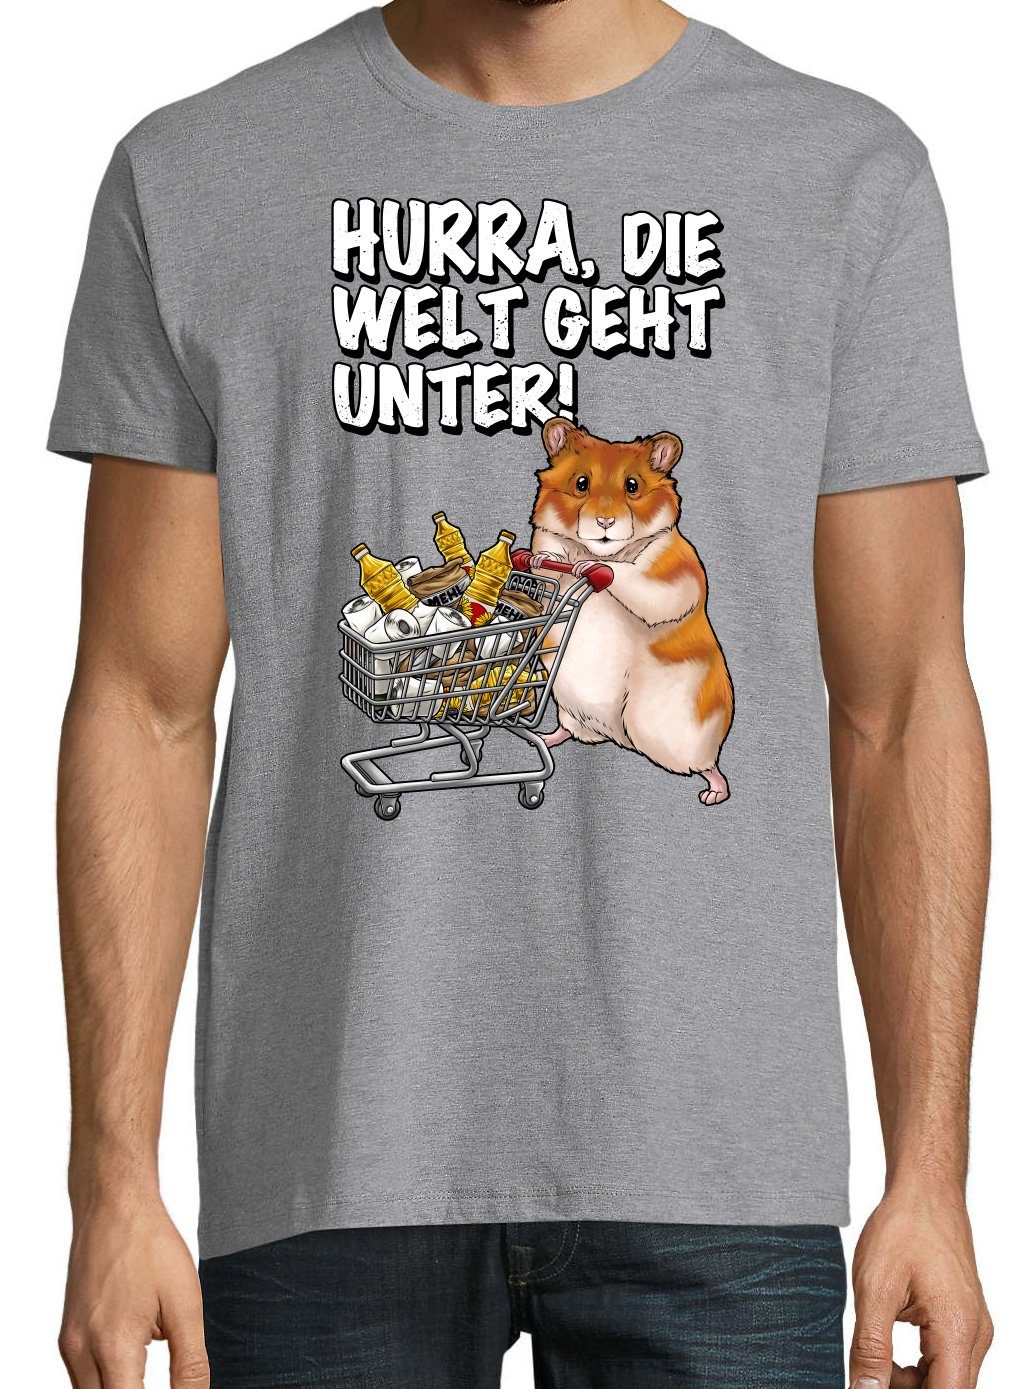 Hurra mit Print Die lustigem Youth Hamster Designz Grau Unter Herren Welt Spruch T-Shirt Geht Print-Shirt